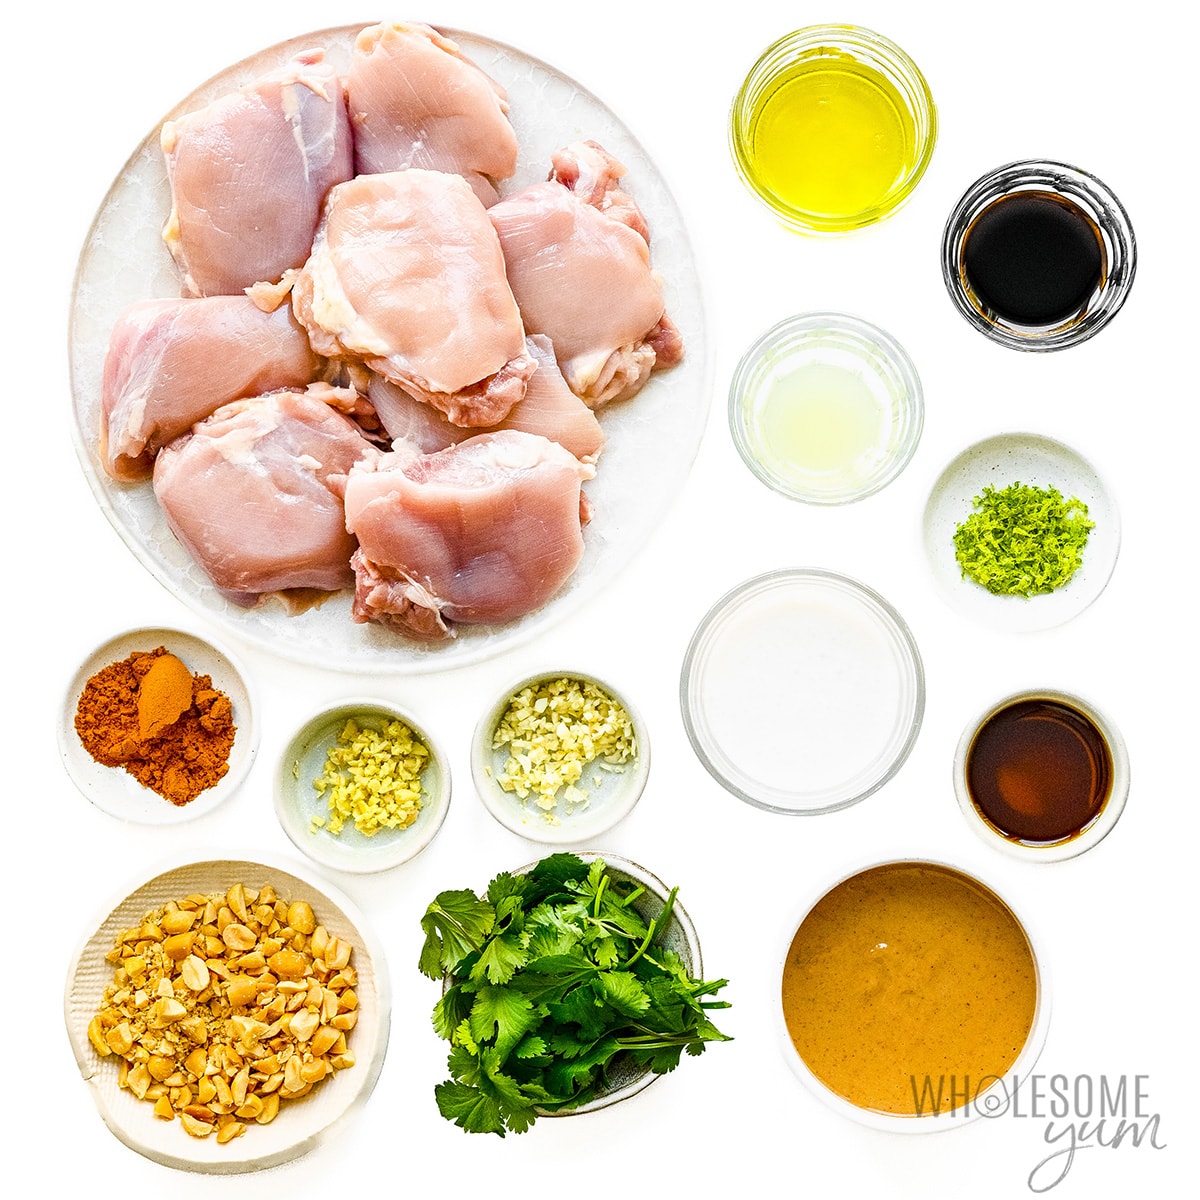 Chicken satay recipe ingredients.